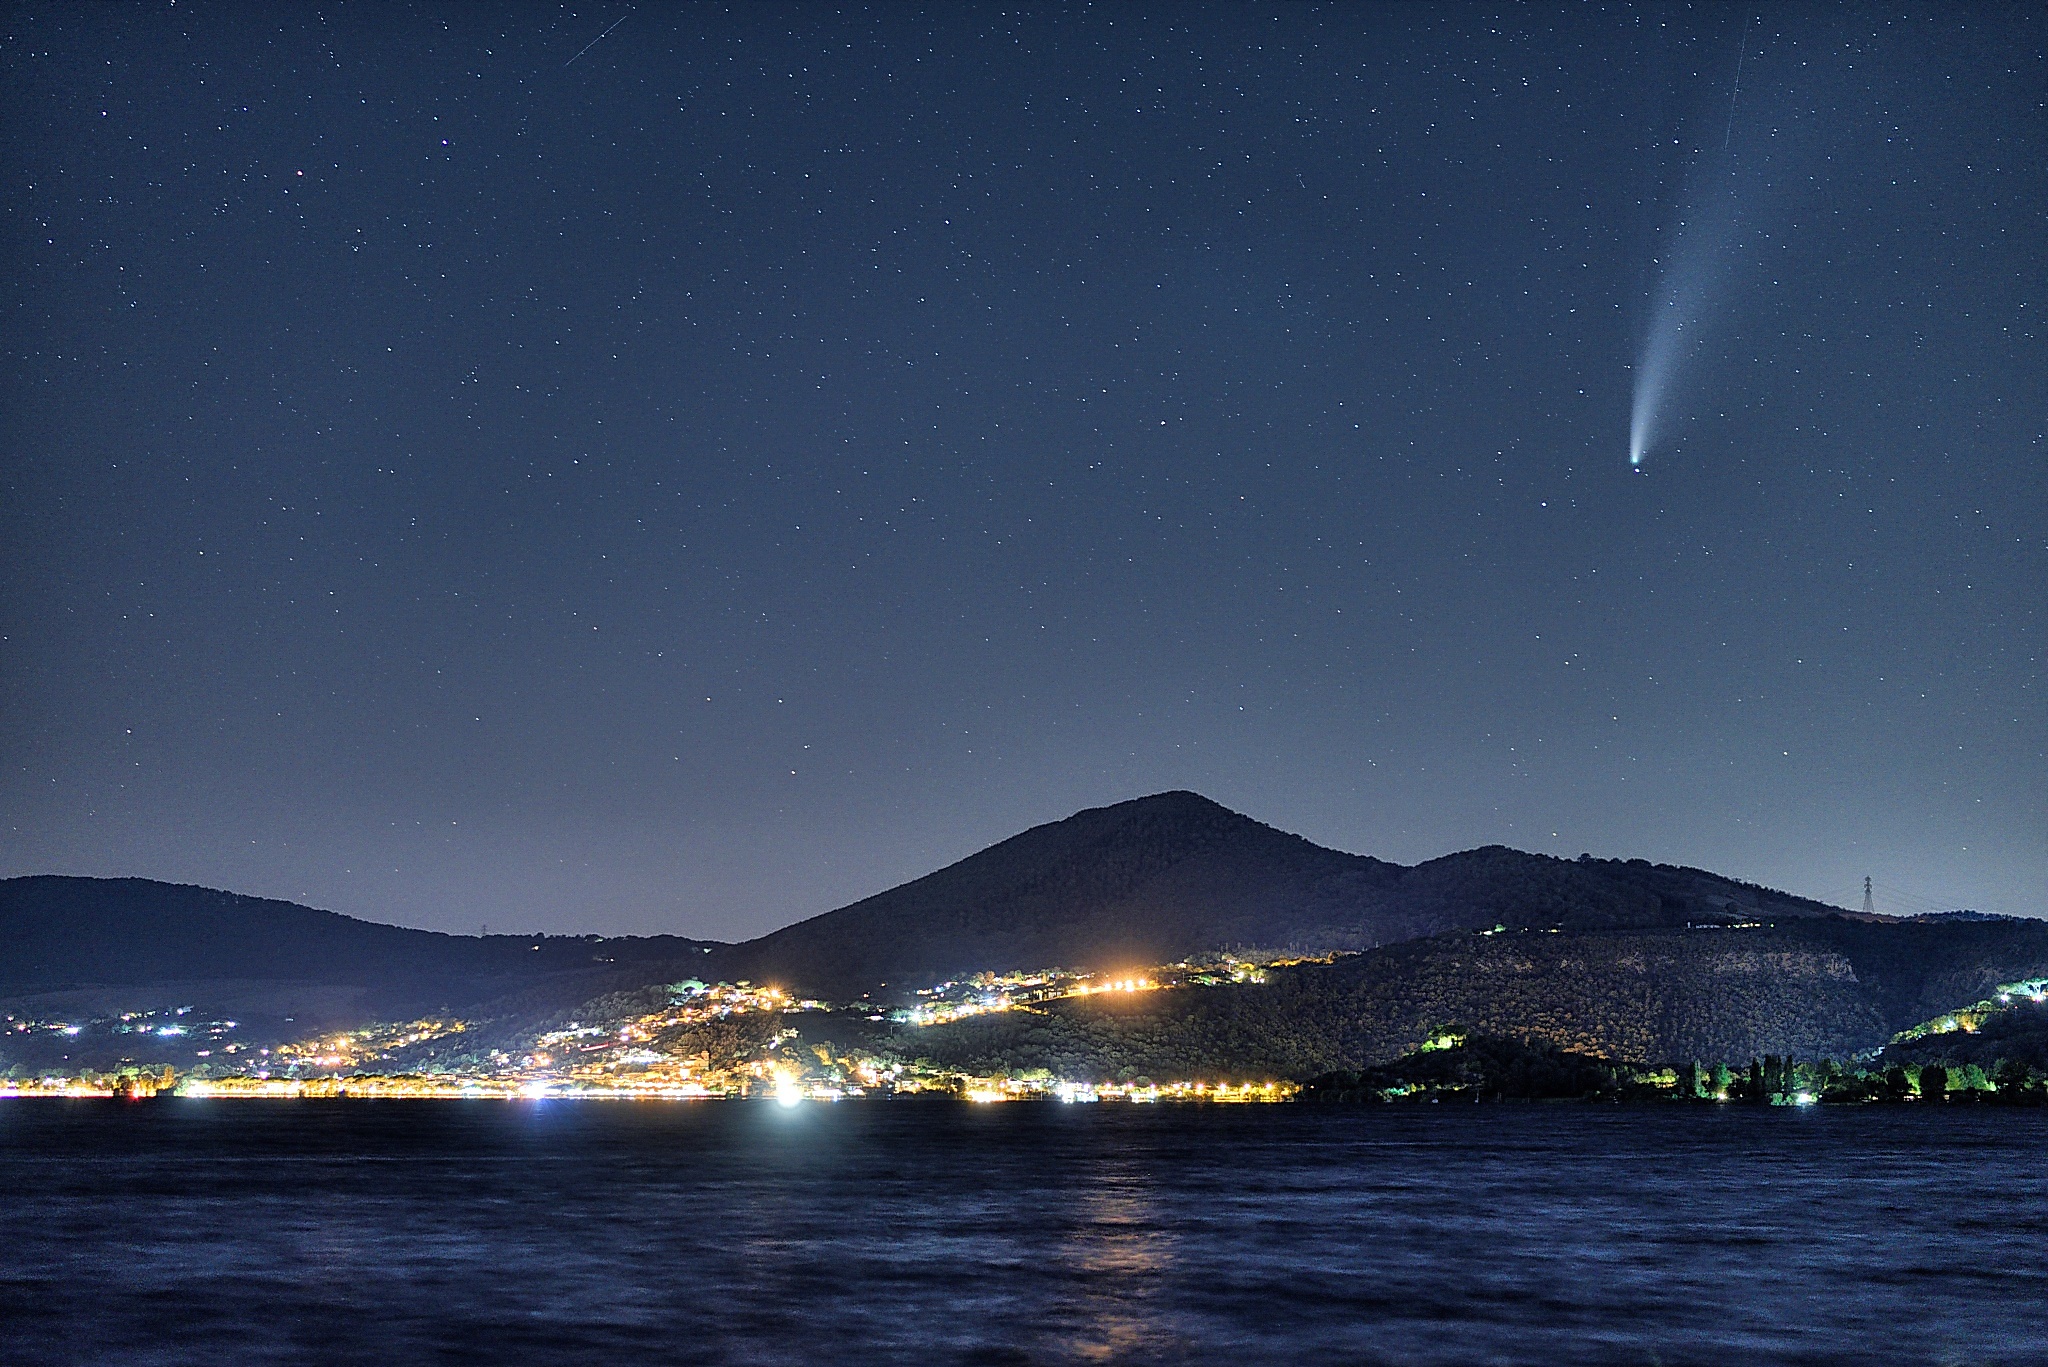 neowise comet over Roman trevignano...